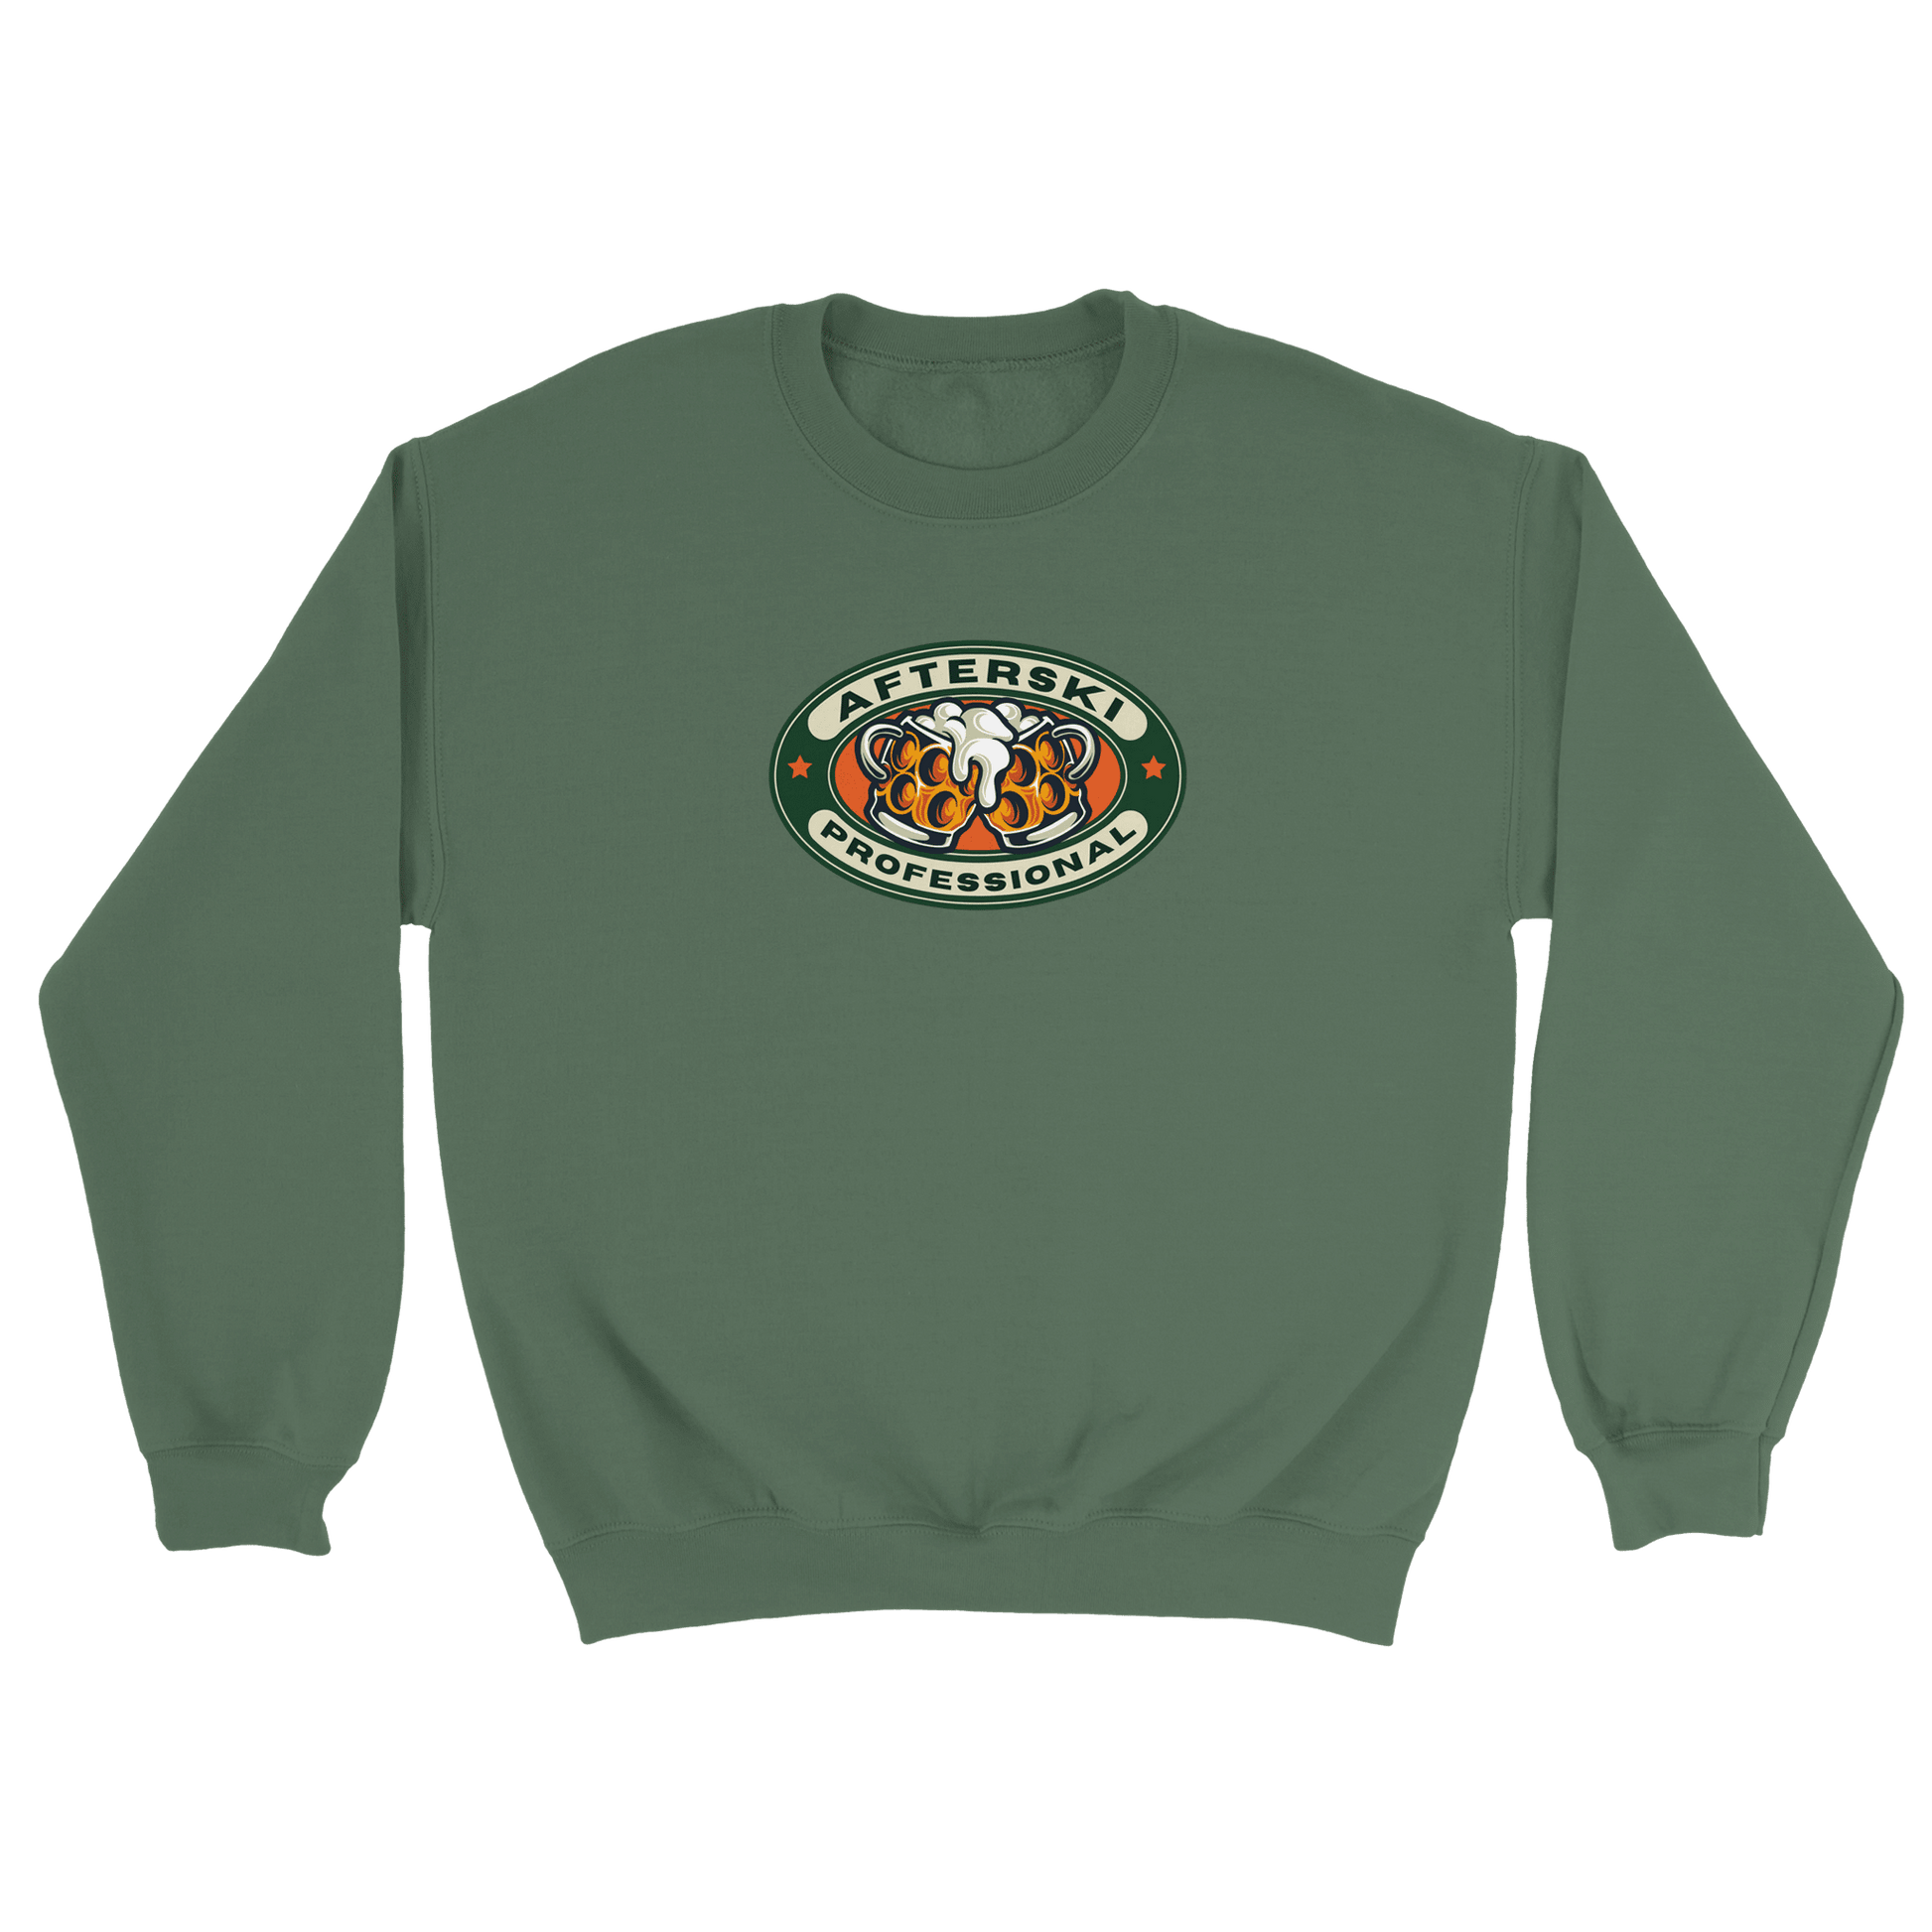 Afterski Professional - Sweatshirt Militärgrön